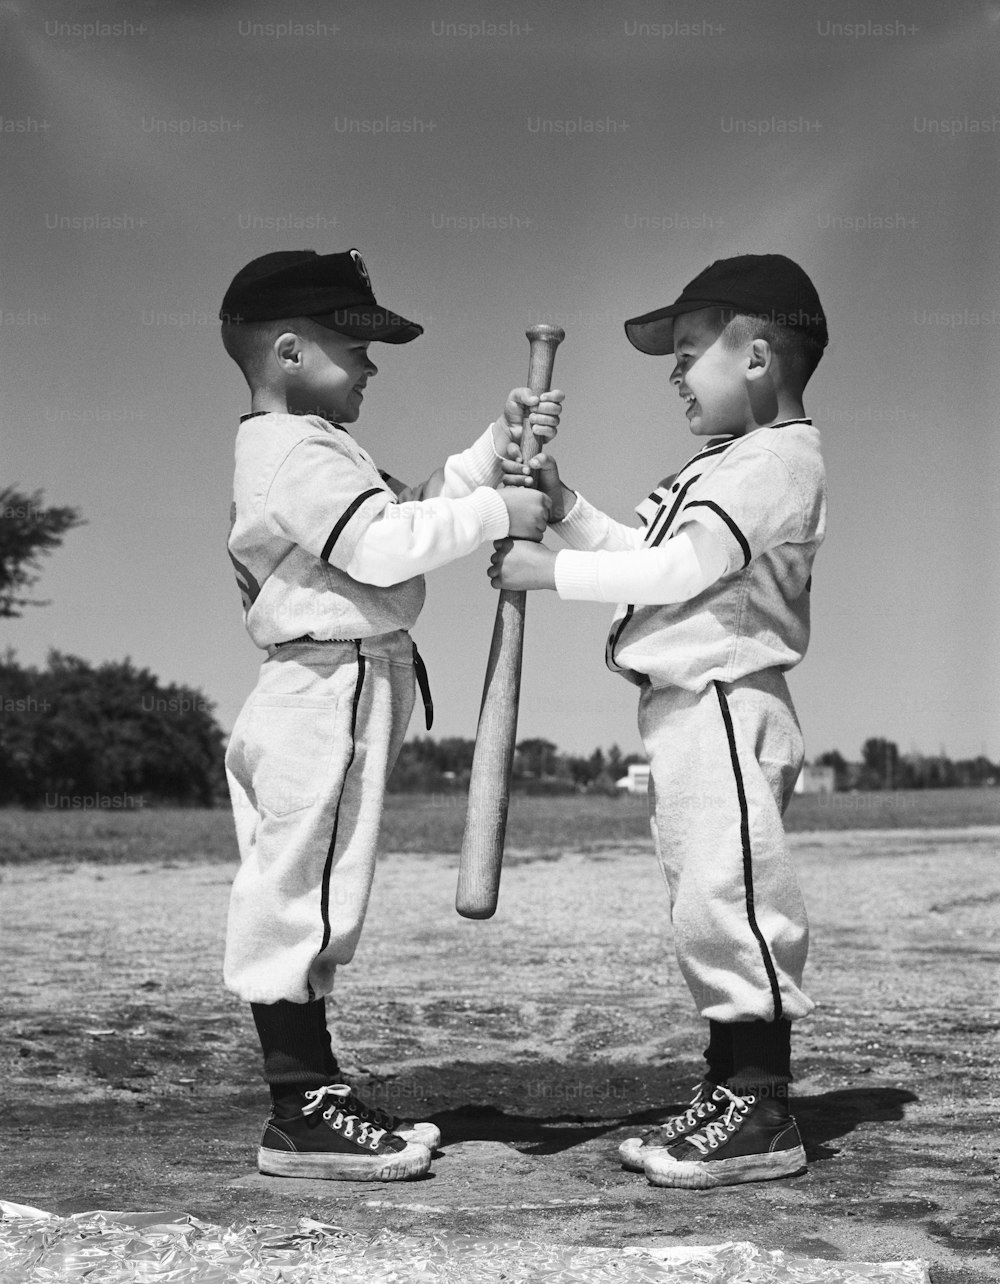 ESTADOS UNIDOS - POR VOLTA DE 1960: Dois meninos em uniformes da Little League, de frente um para o outro, segurando taco de beisebol.